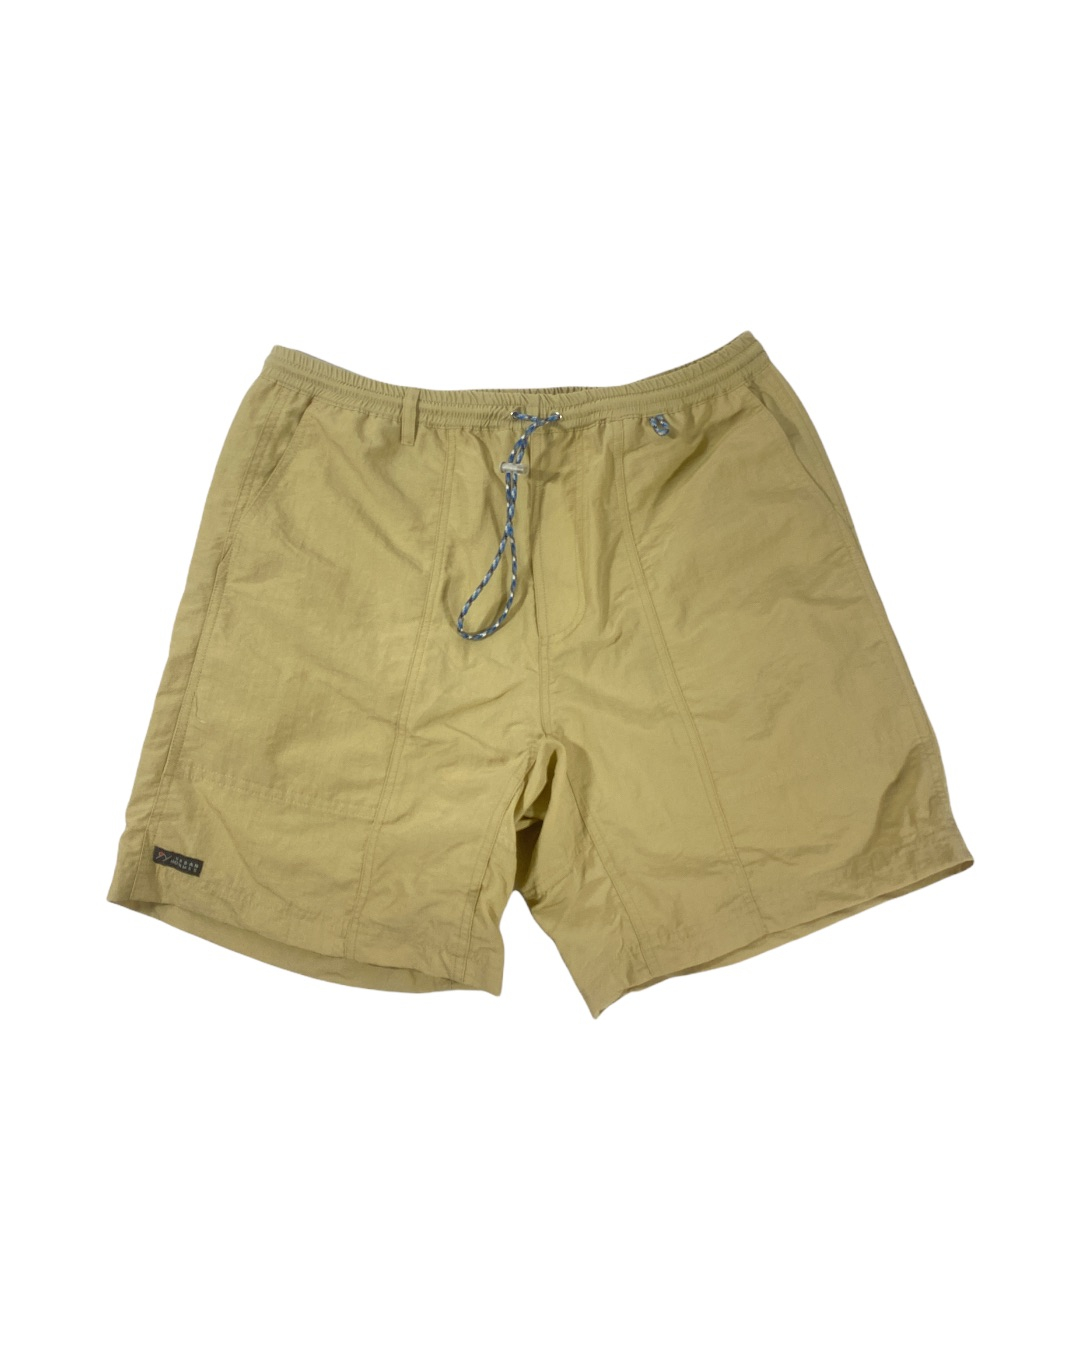 MONT Nylon Shorts (Beige)